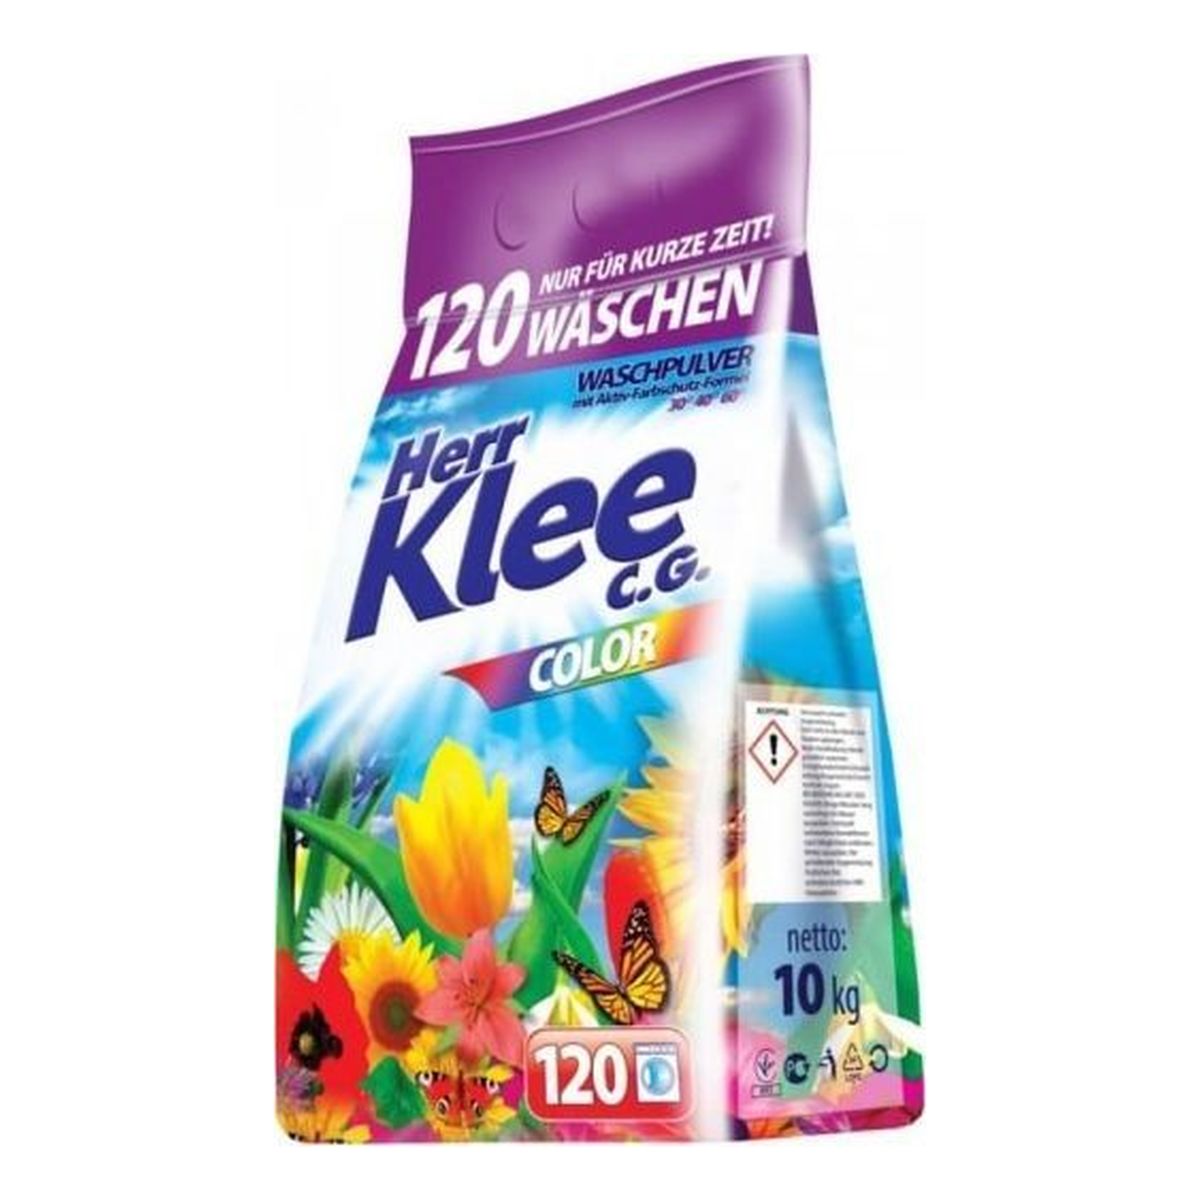 Herr Klee Proszek do prania Color folia 120 prań 10kg